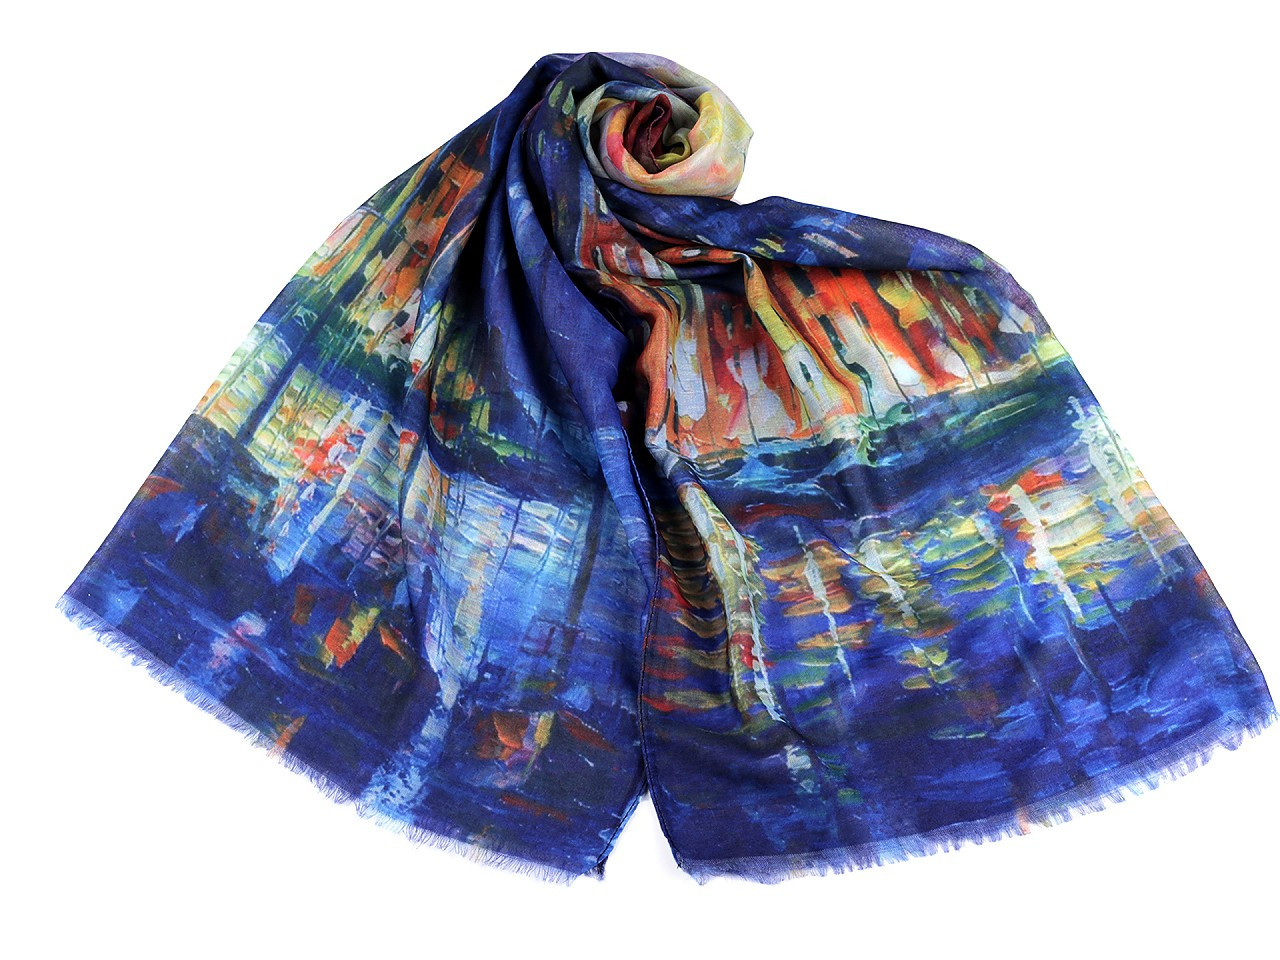 Šátek / šála viskózová 70x170 cm, barva 8 multikolor modrá